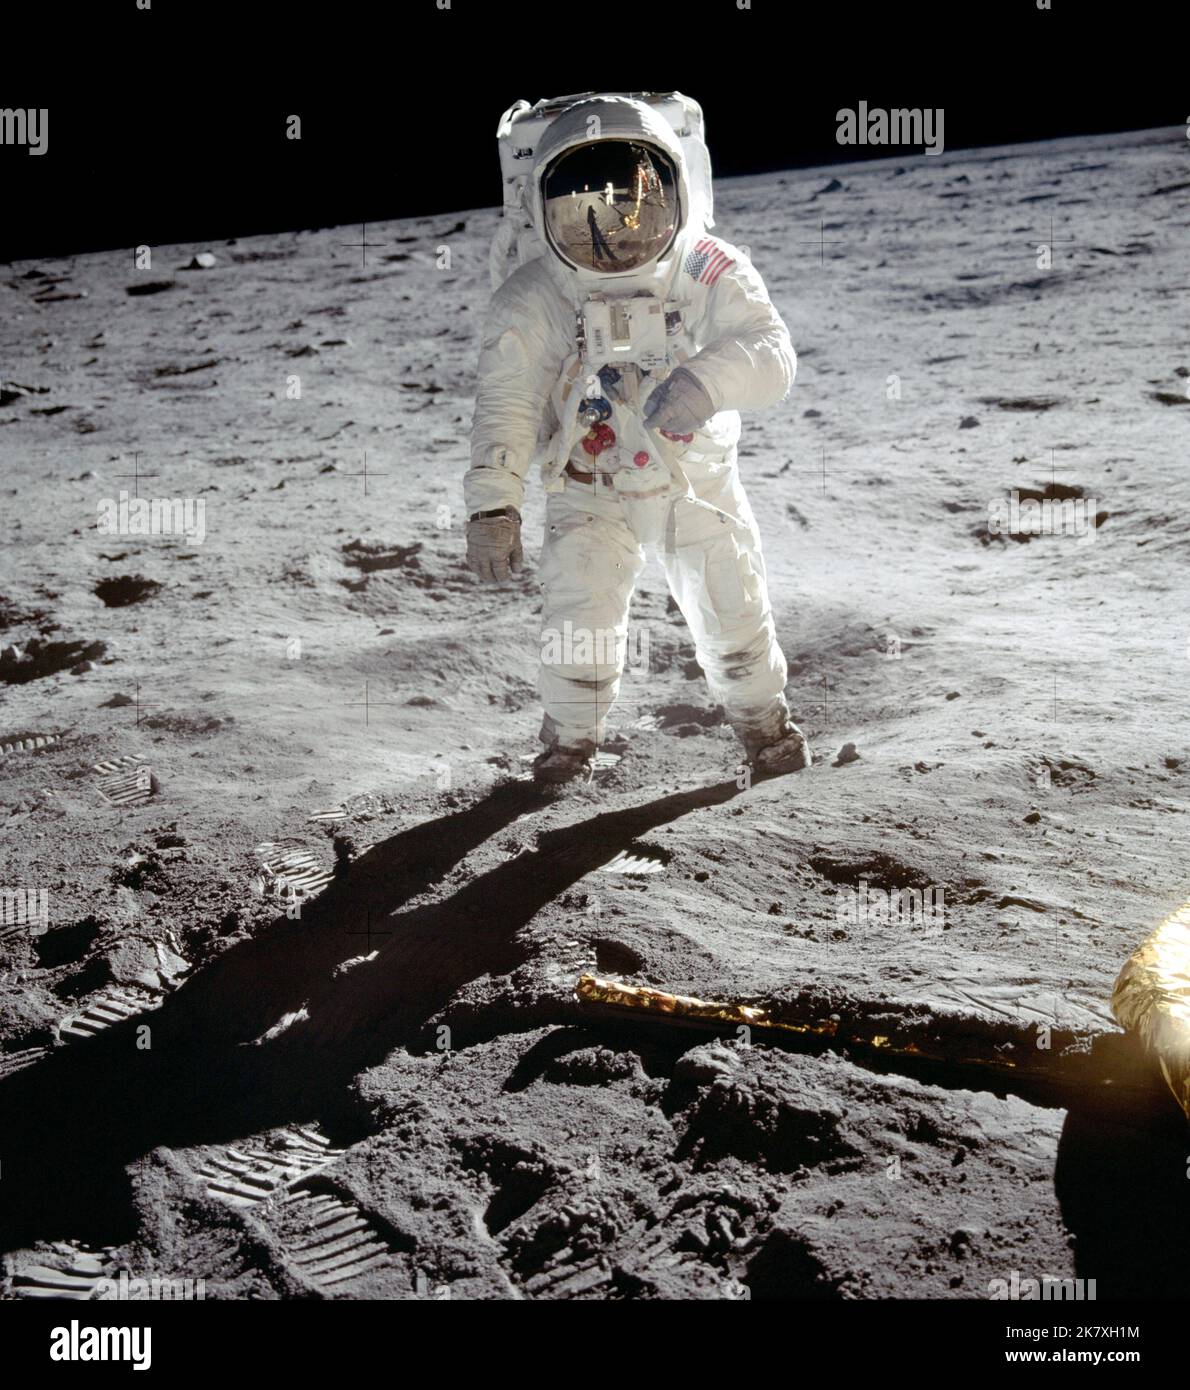 L'astronauta Buzz Aldrin cammina sulla superficie della luna vicino alla gamba del modulo lunare Eagle durante la missione Apollo 11. Il comandante della missione Neil Armstrong ha scattato questa fotografia con una telecamera lunare di superficie 70mm. Mentre gli astronauti Armstrong e Aldrin esplorarono la regione del Mare della tranquillità della luna, l'astronauta Michael Collins rimase con i moduli di comando e servizio in orbita lunare. Foto Stock